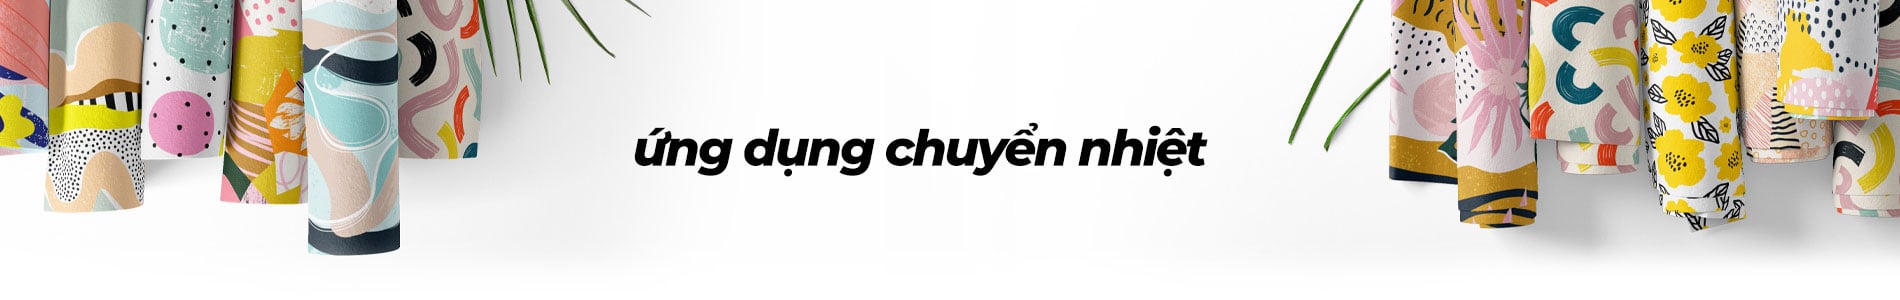 ung dung may in chuyen nhiet daf0838269dd480992e119fa1f79f7e8